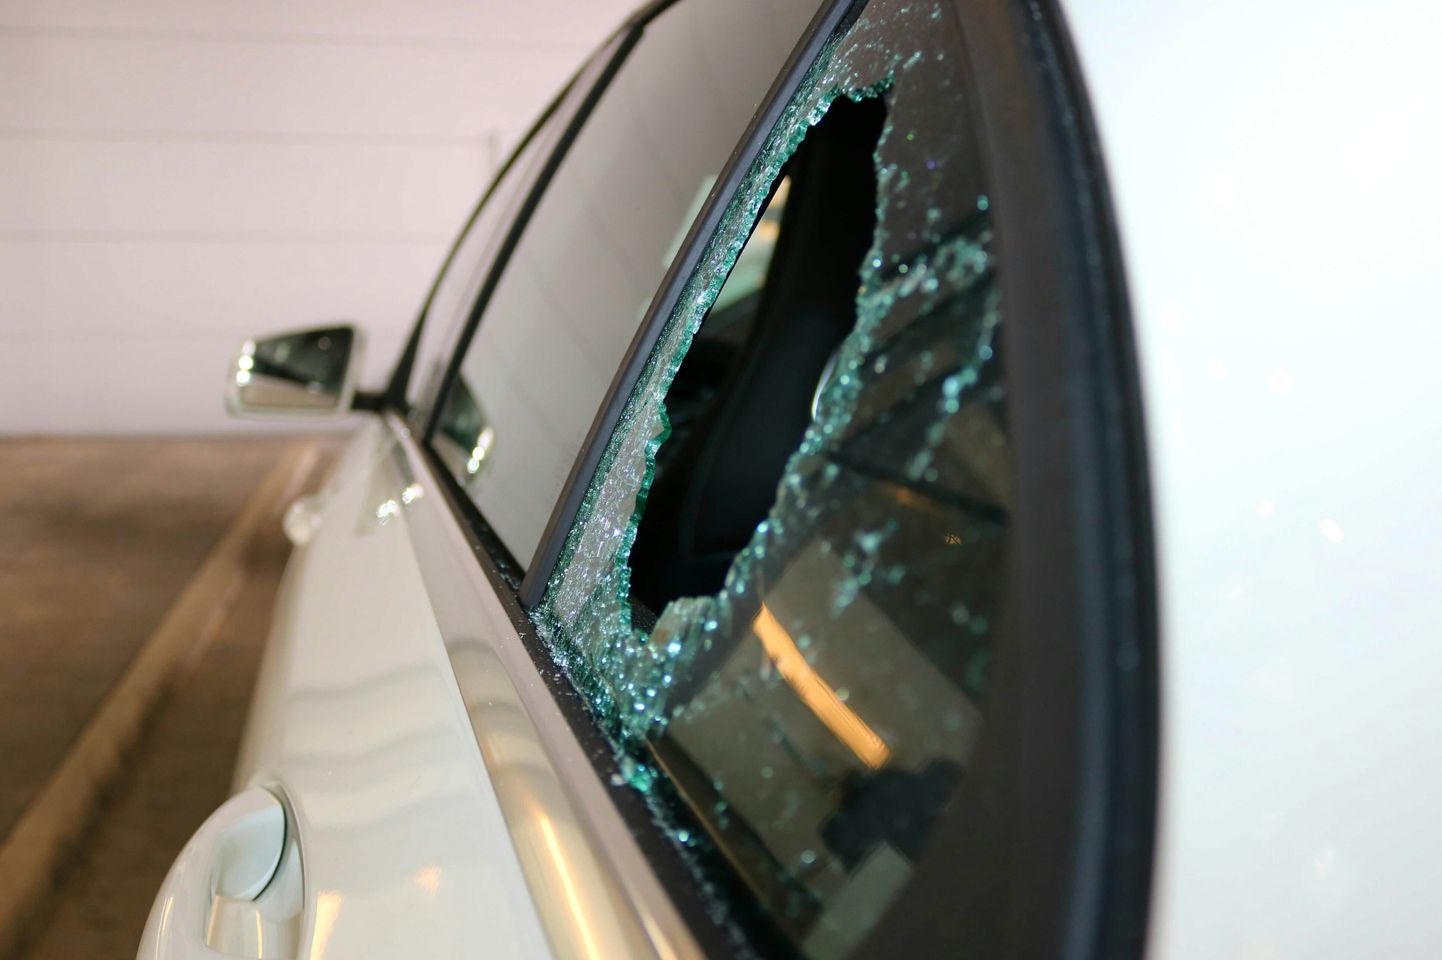 Zādzība no automašīnas, kurai izsists stikls